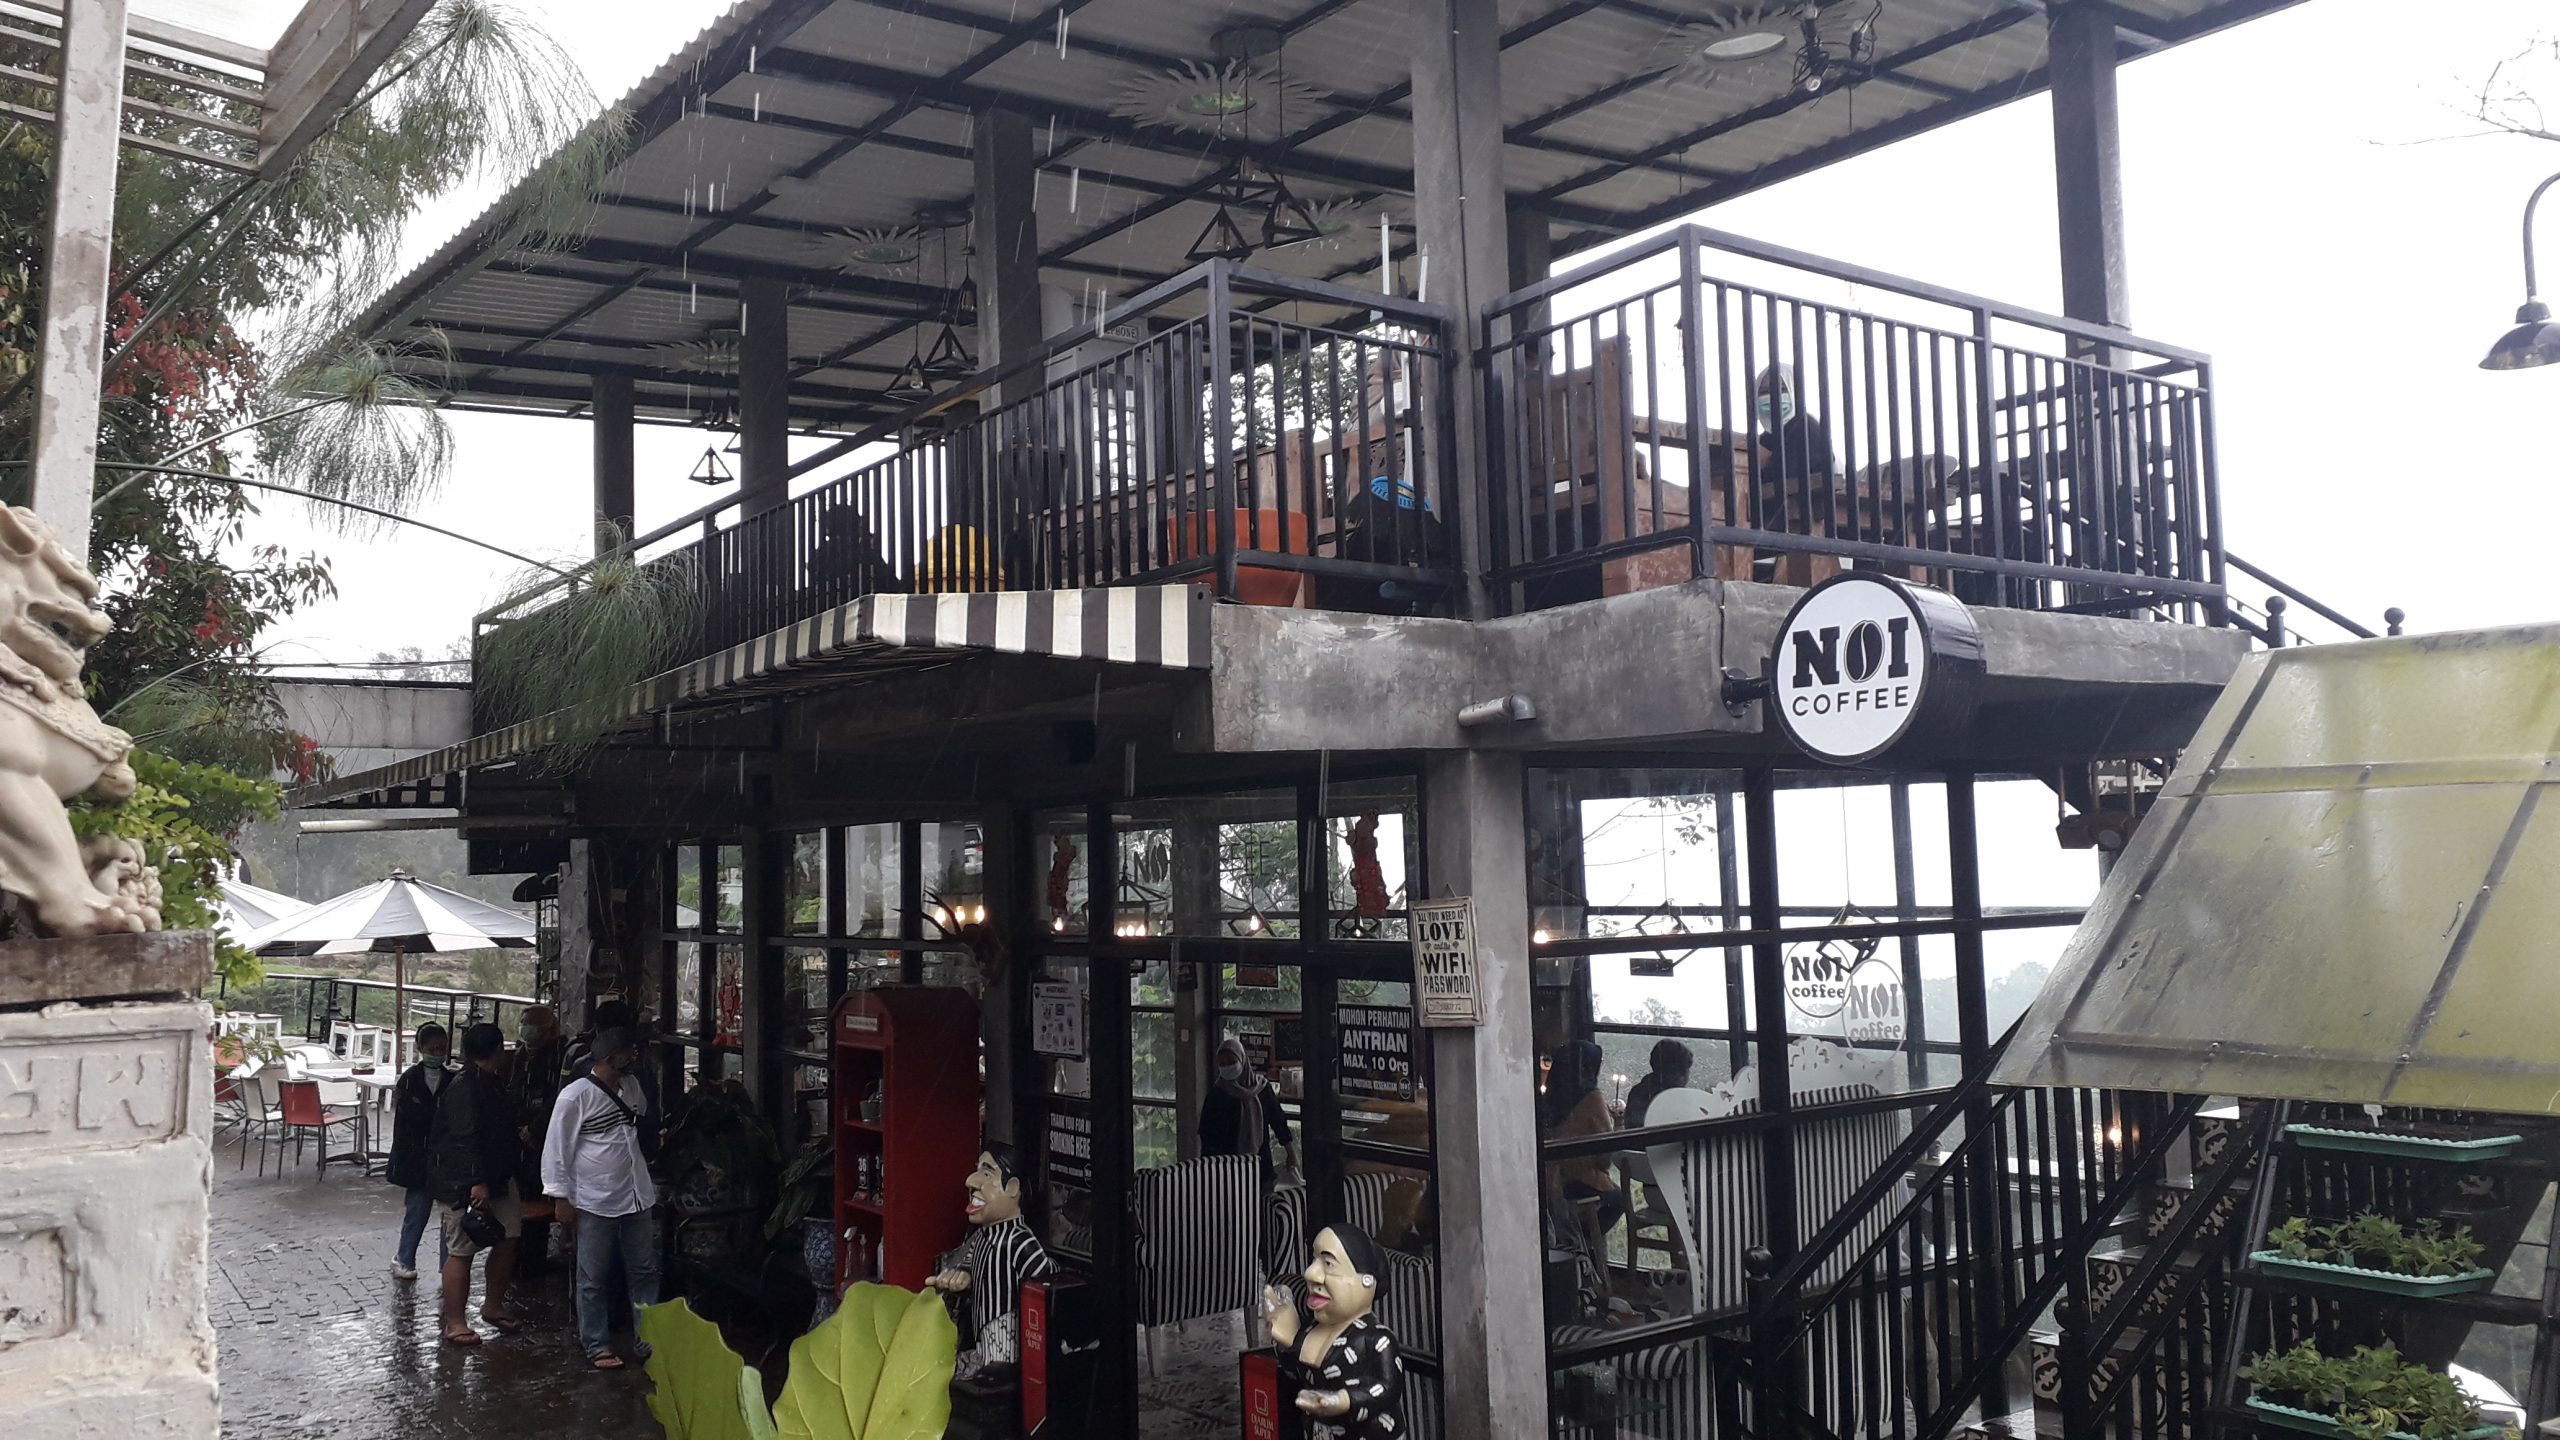 Dinilai Tak Berizin, Cafe di Desa Sumber Berantas Dipaksa Tutup